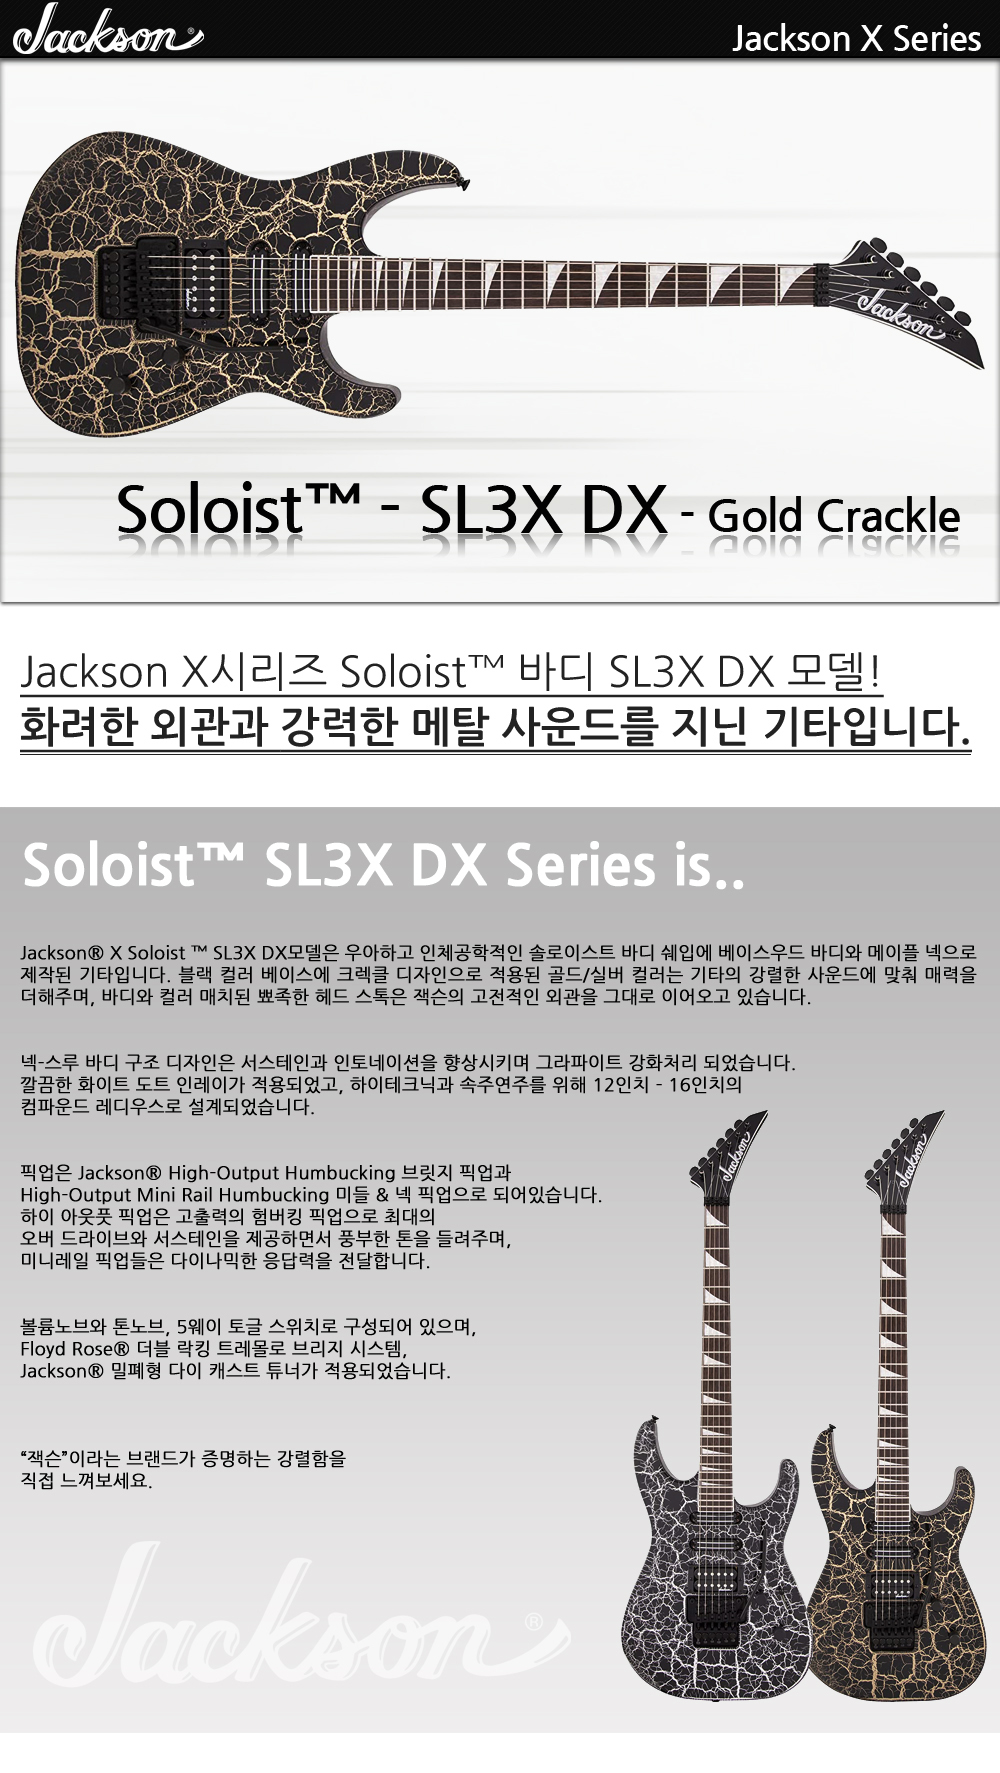 Jackson-X-Soloist-SL3XDX-GoldCrackle_1_145728.jpg